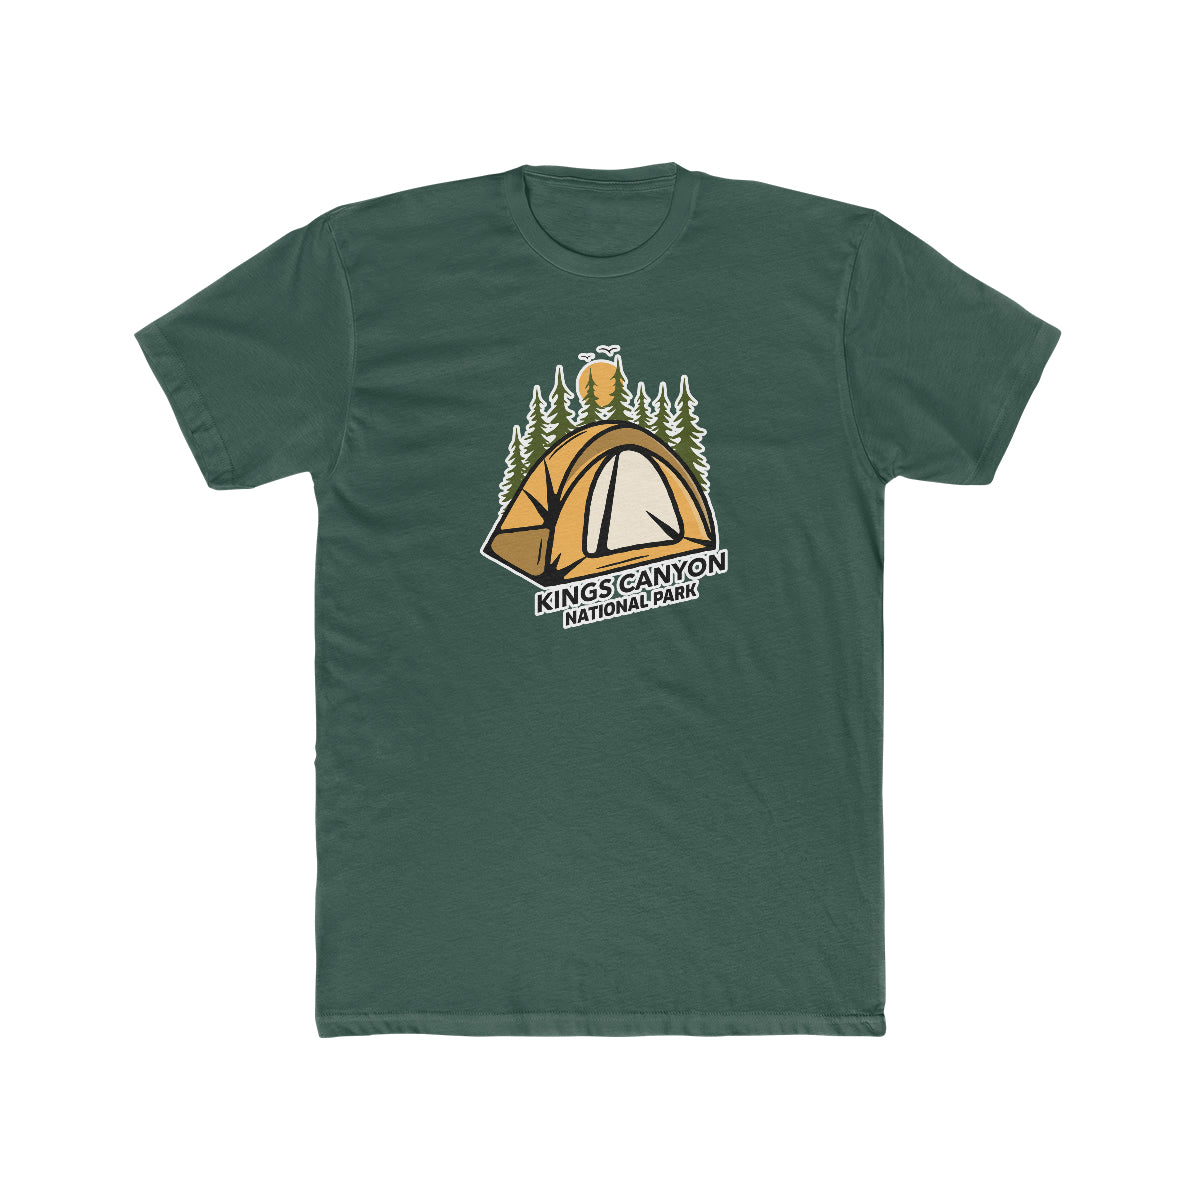 Kings Canyon National Park T-Shirt - Camping